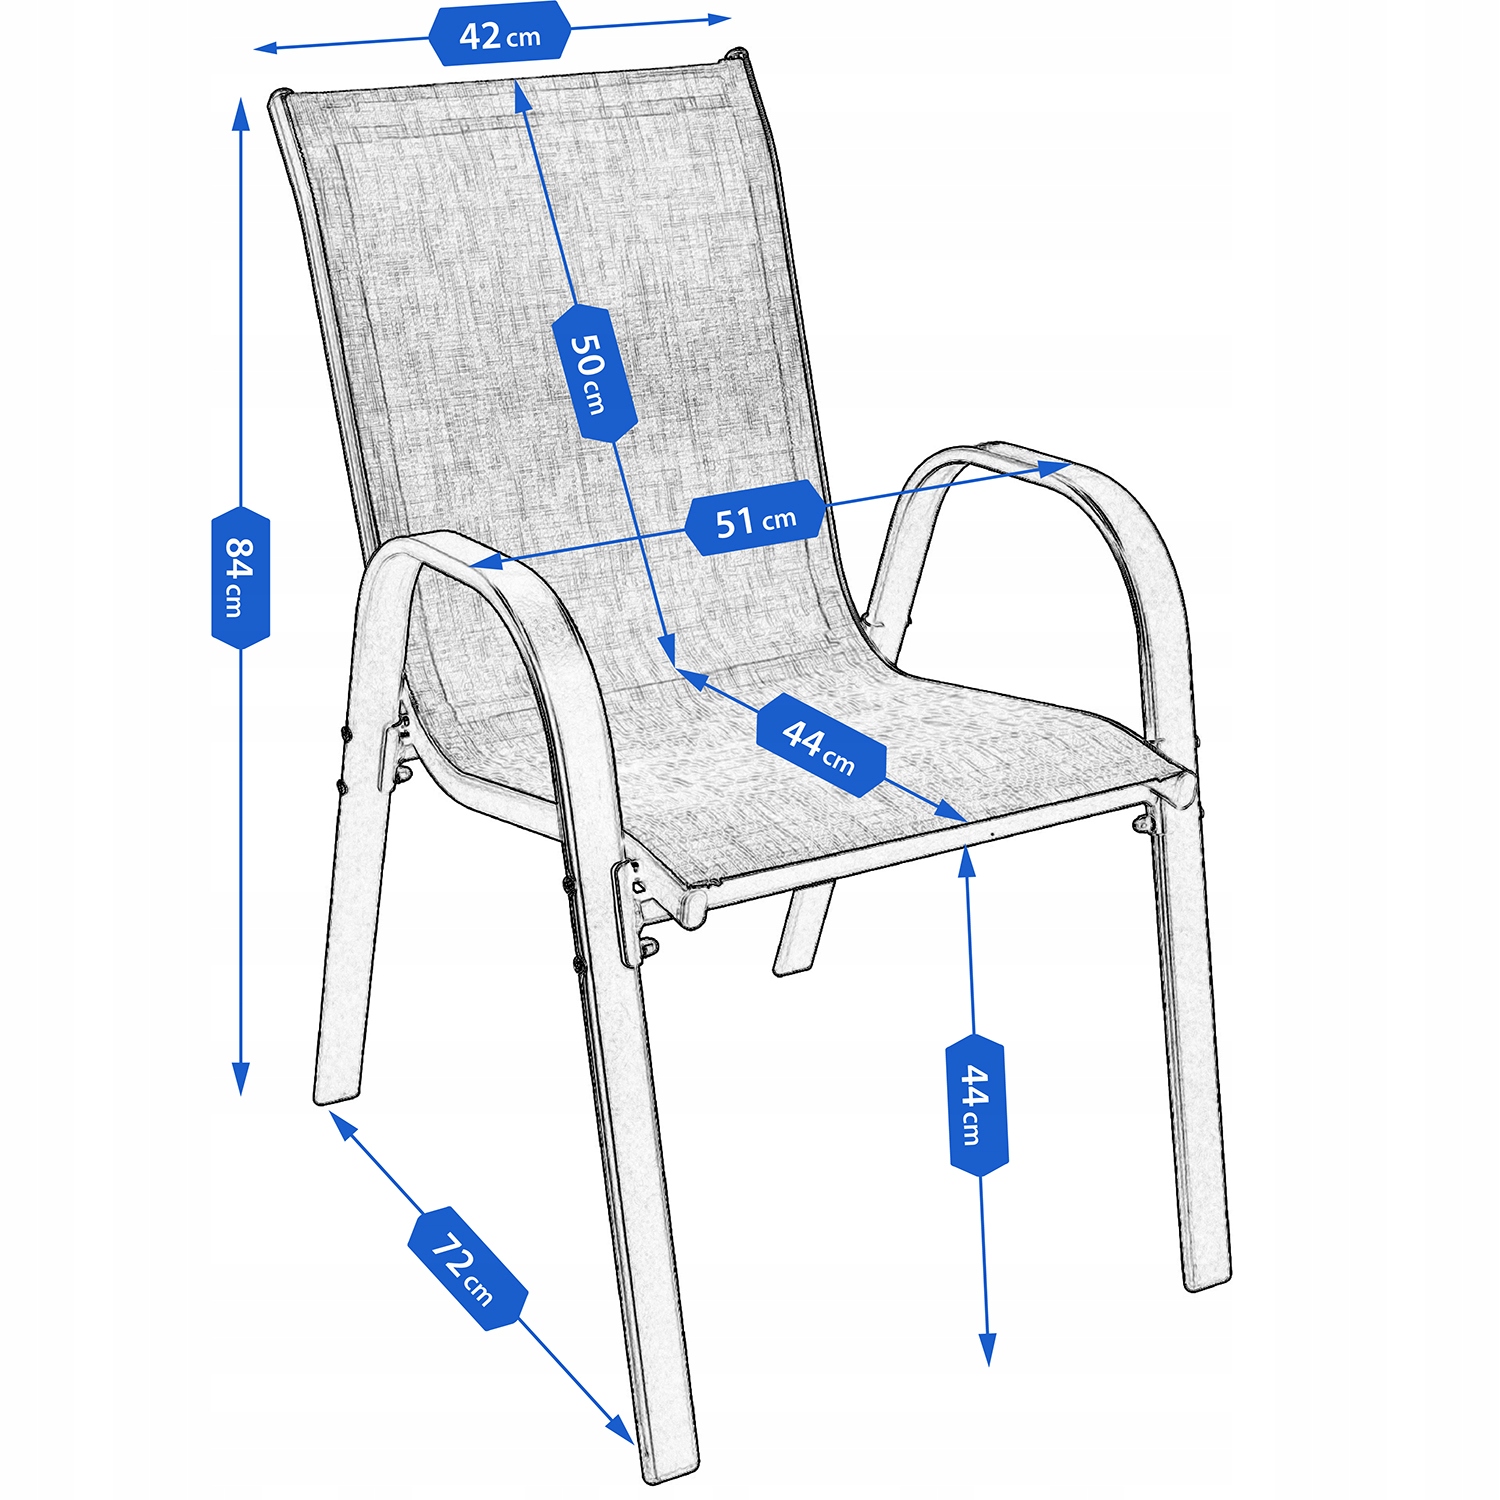 MEBLE OGRODOWE taras zestaw komplet stół krzesł, , OM-967984.5900410967984, Liczba osób 4